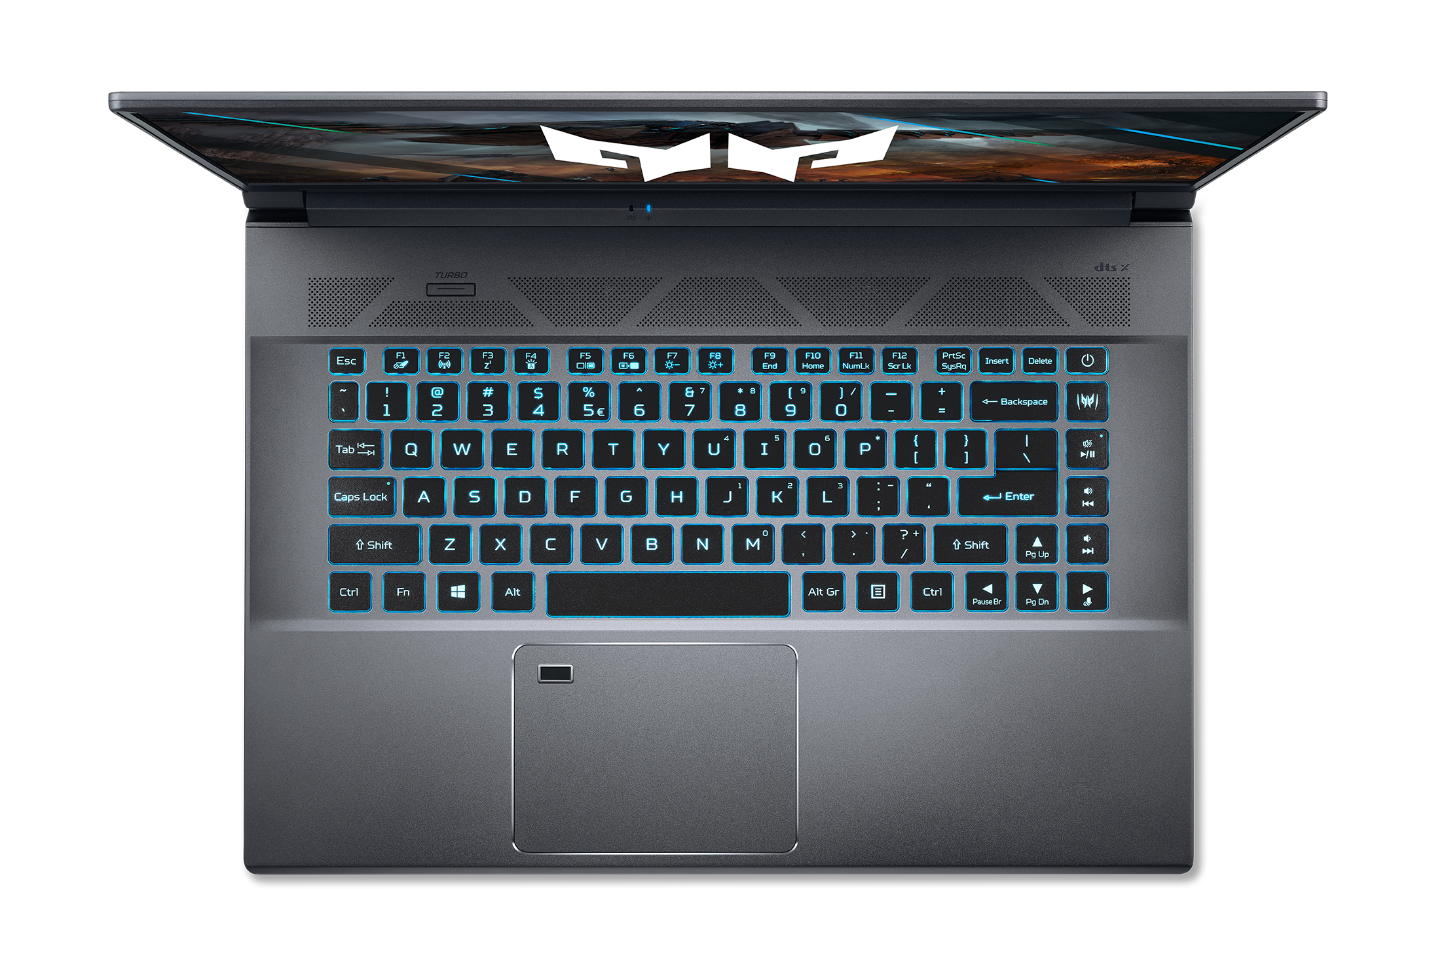 Acer ra mắt bộ đôi laptop gaming cao cấp Predator Triton 300 và Triton 500 SE - 8fI Sjix5SLxqswH 88oJmyzz